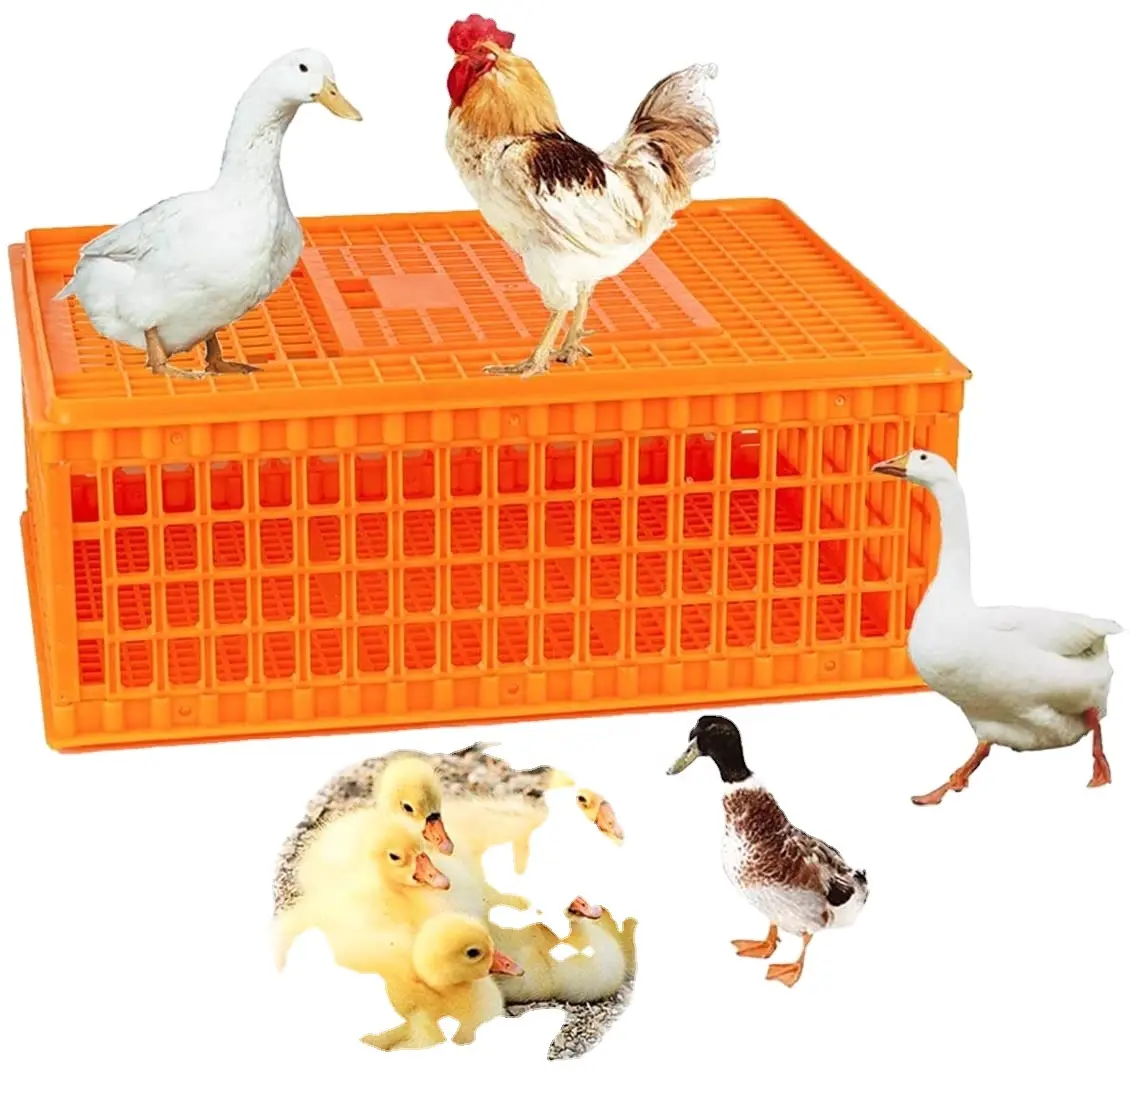 Keranjang Pembawa Unggas Kandang Plastik Transport Ayam Keranjang Pembawa Ayam Unggas